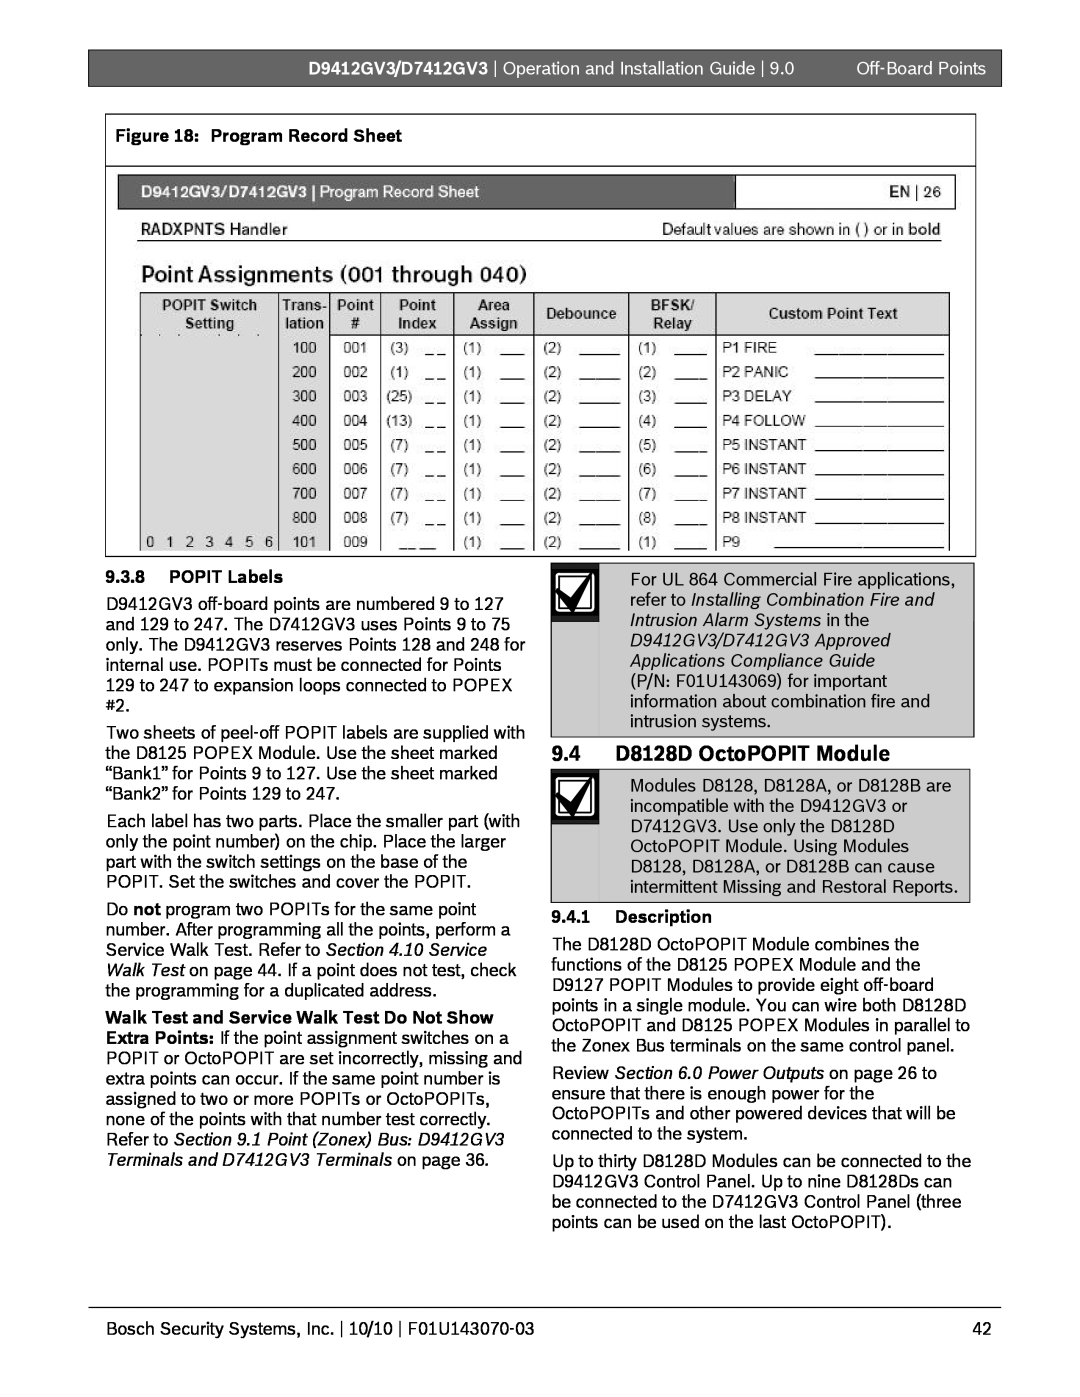 Bosch Appliances D9412GV3, D7412GV3 9.4D8128D OctoPOPIT Module, Program Record Sheet, 9.3.8POPIT Labels, 9.4.1Description 